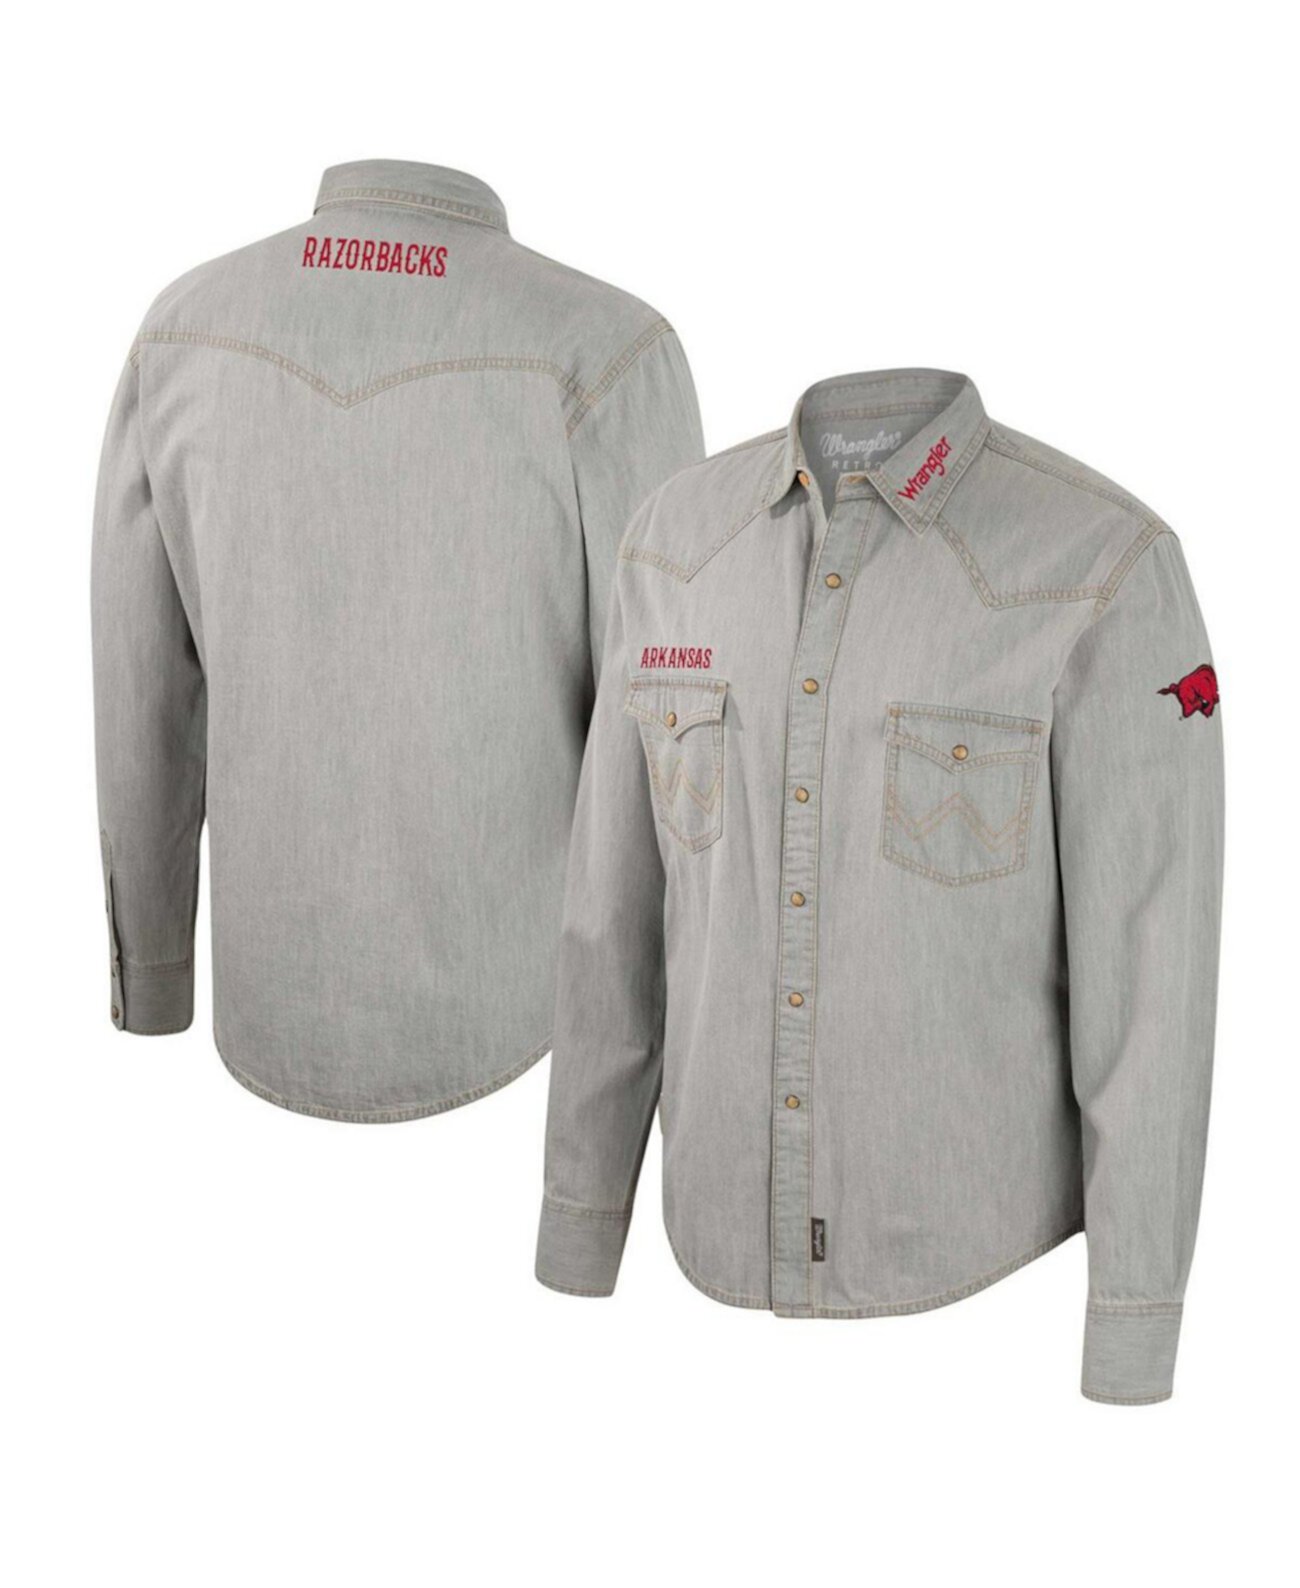 Мужская рубашка в ковбойском стиле с длинными рукавами и застежкой на кнопки в стиле вестерн x Wrangler Grey Arkansas Razorbacks Colosseum